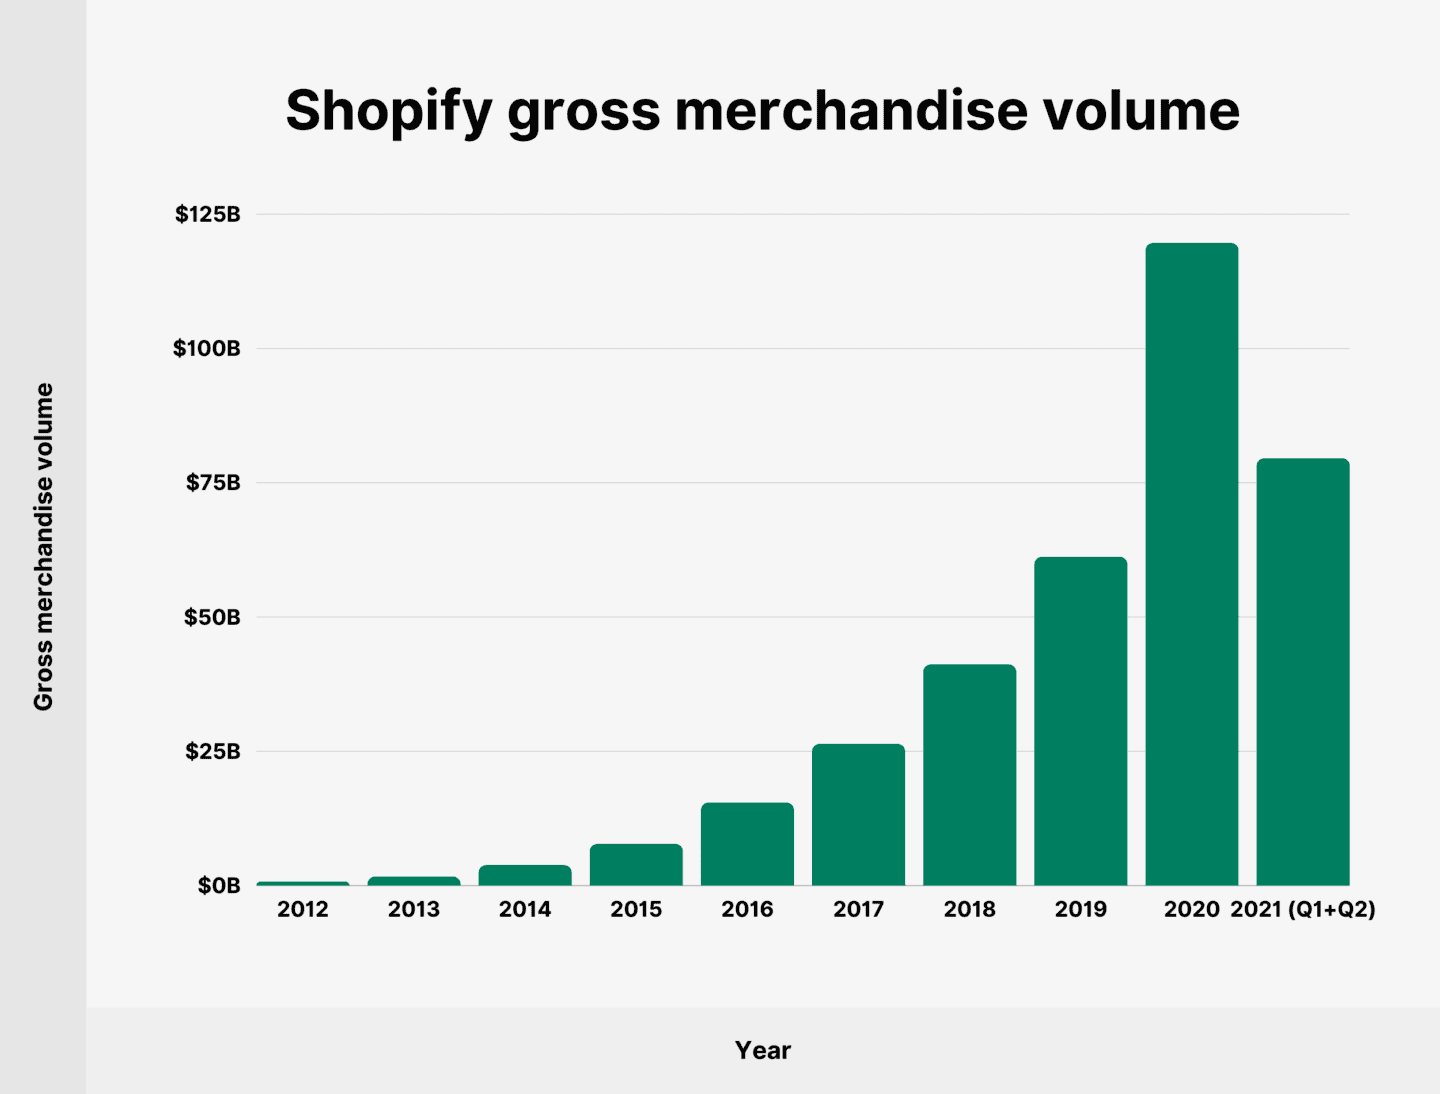 El valor bruto de la mercancía de Shopify en 2021 fue de 79,5 mil millones